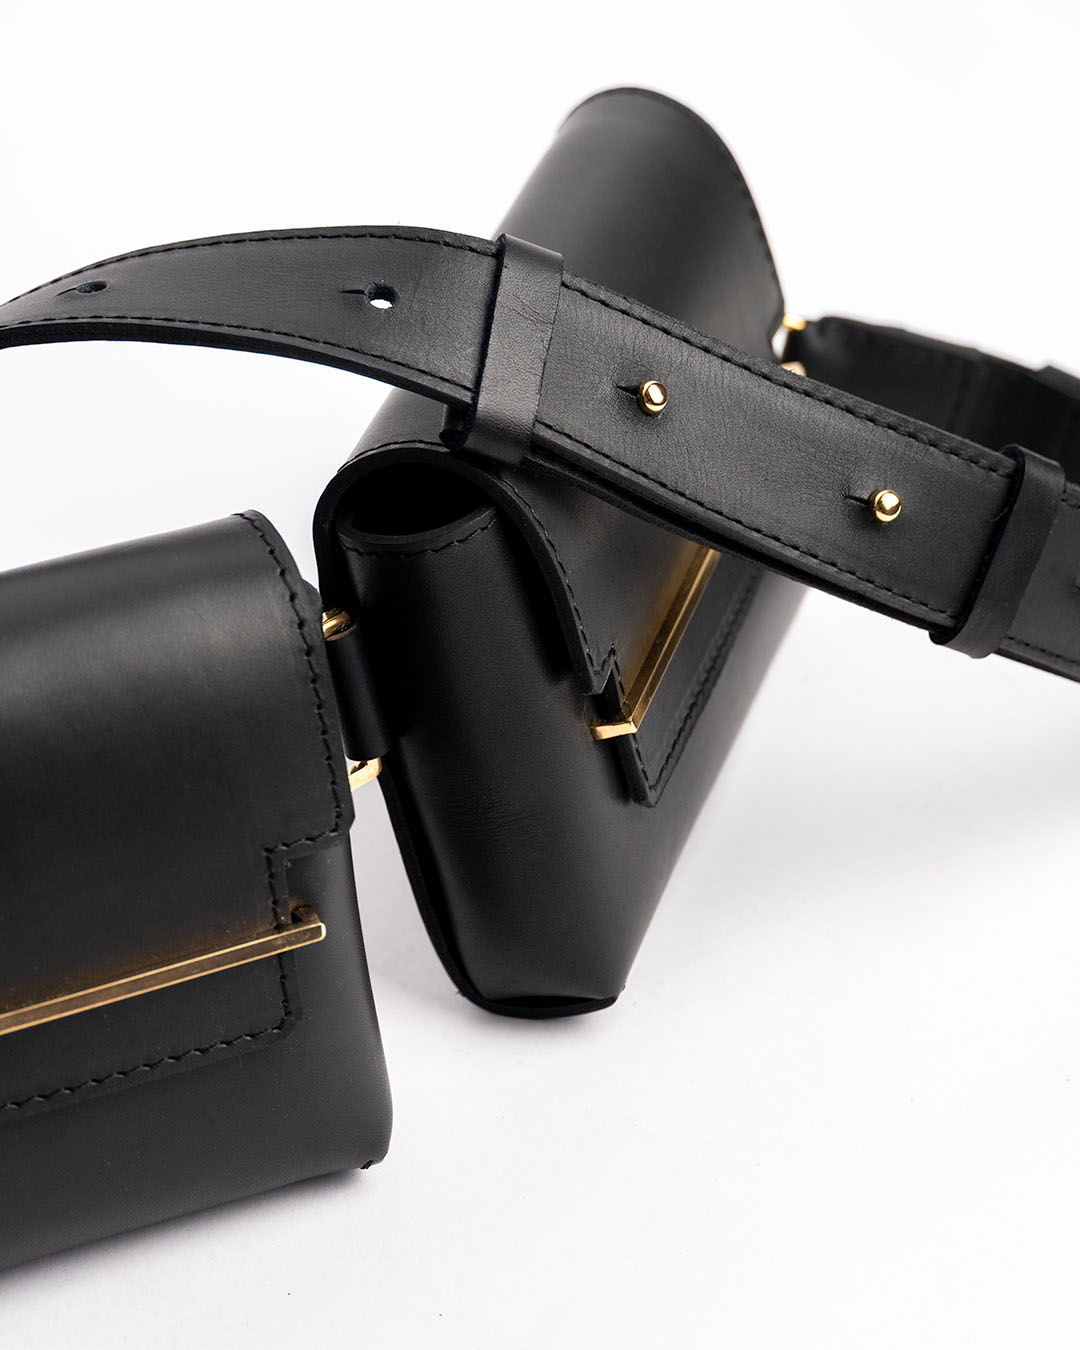 Sling bag leather black gold handmade handcrafted